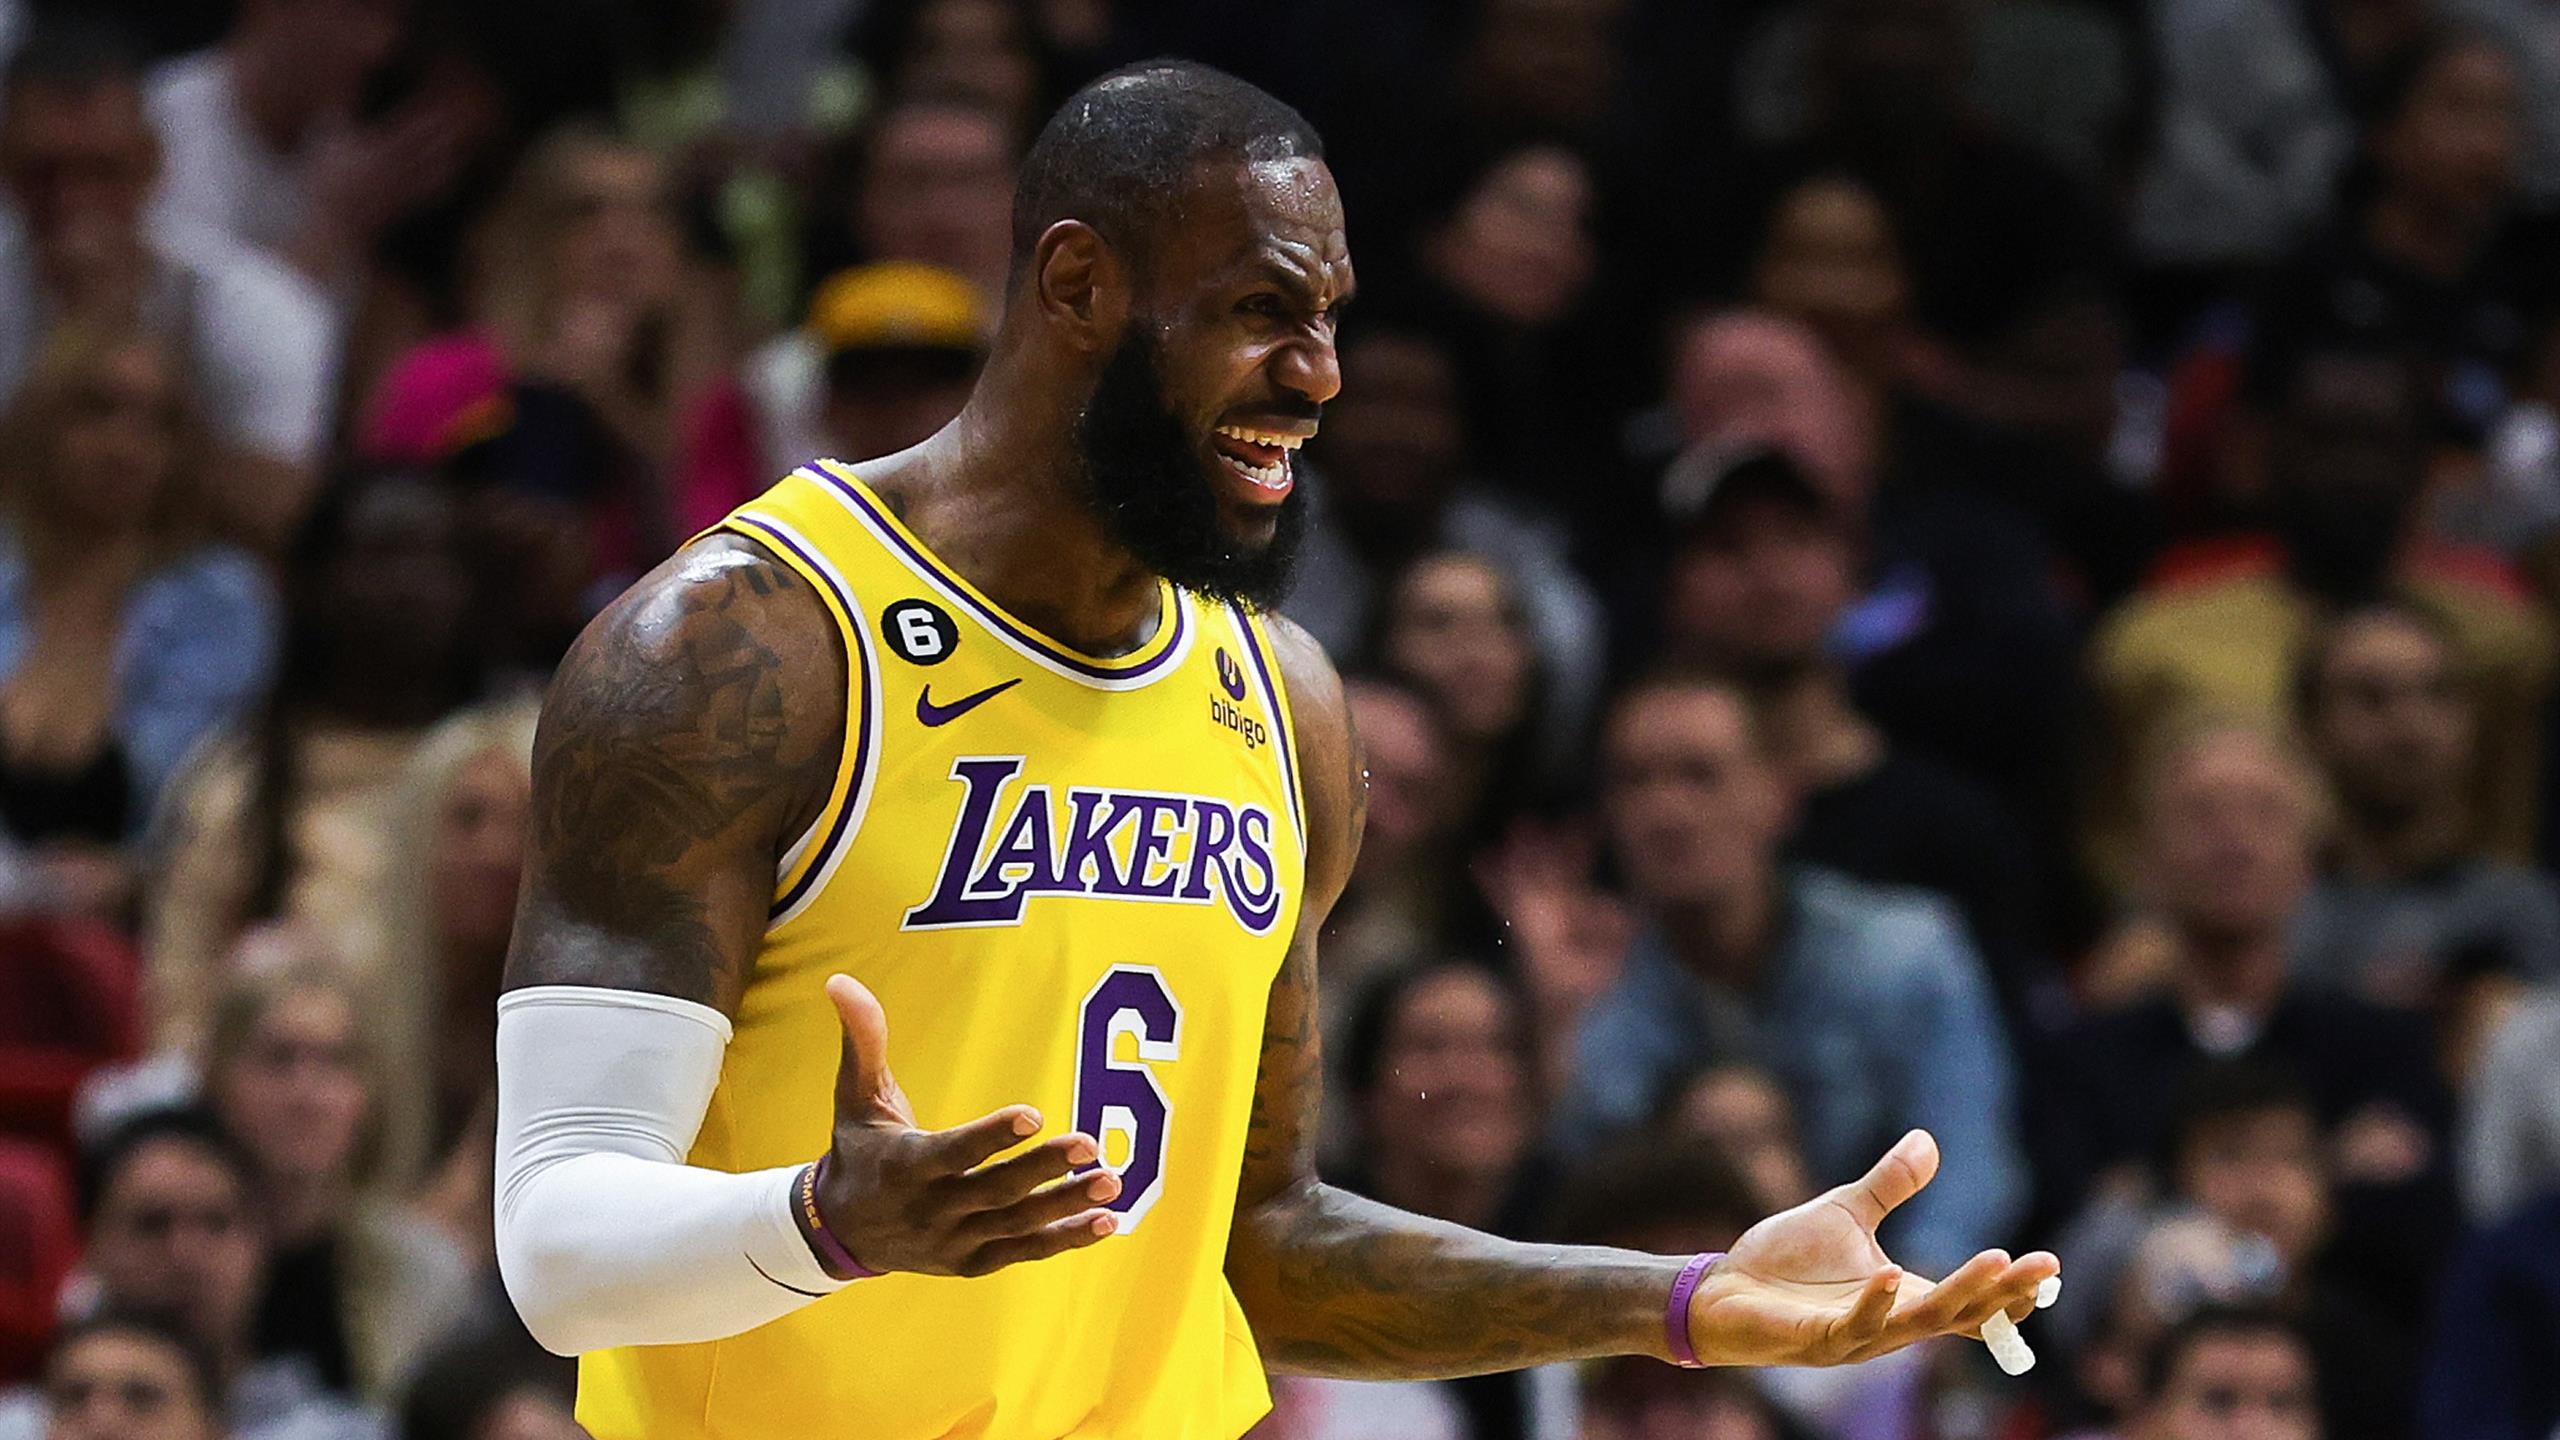 LeBron spaventa i Lakers: "Voglio giocare per vincere, non così"